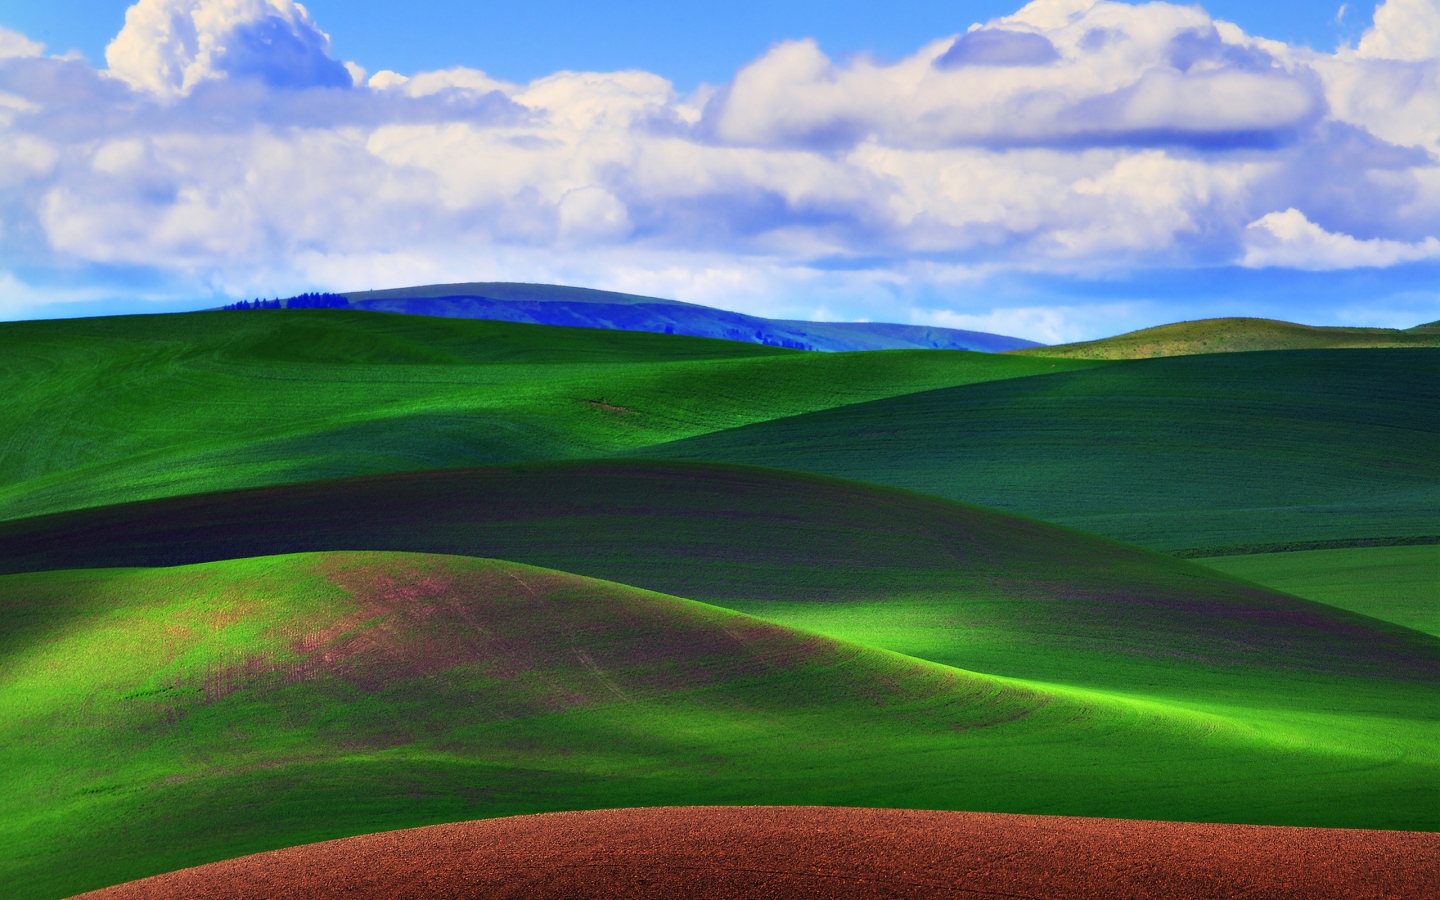 Green Grass Field for 1440 x 900 widescreen resolution